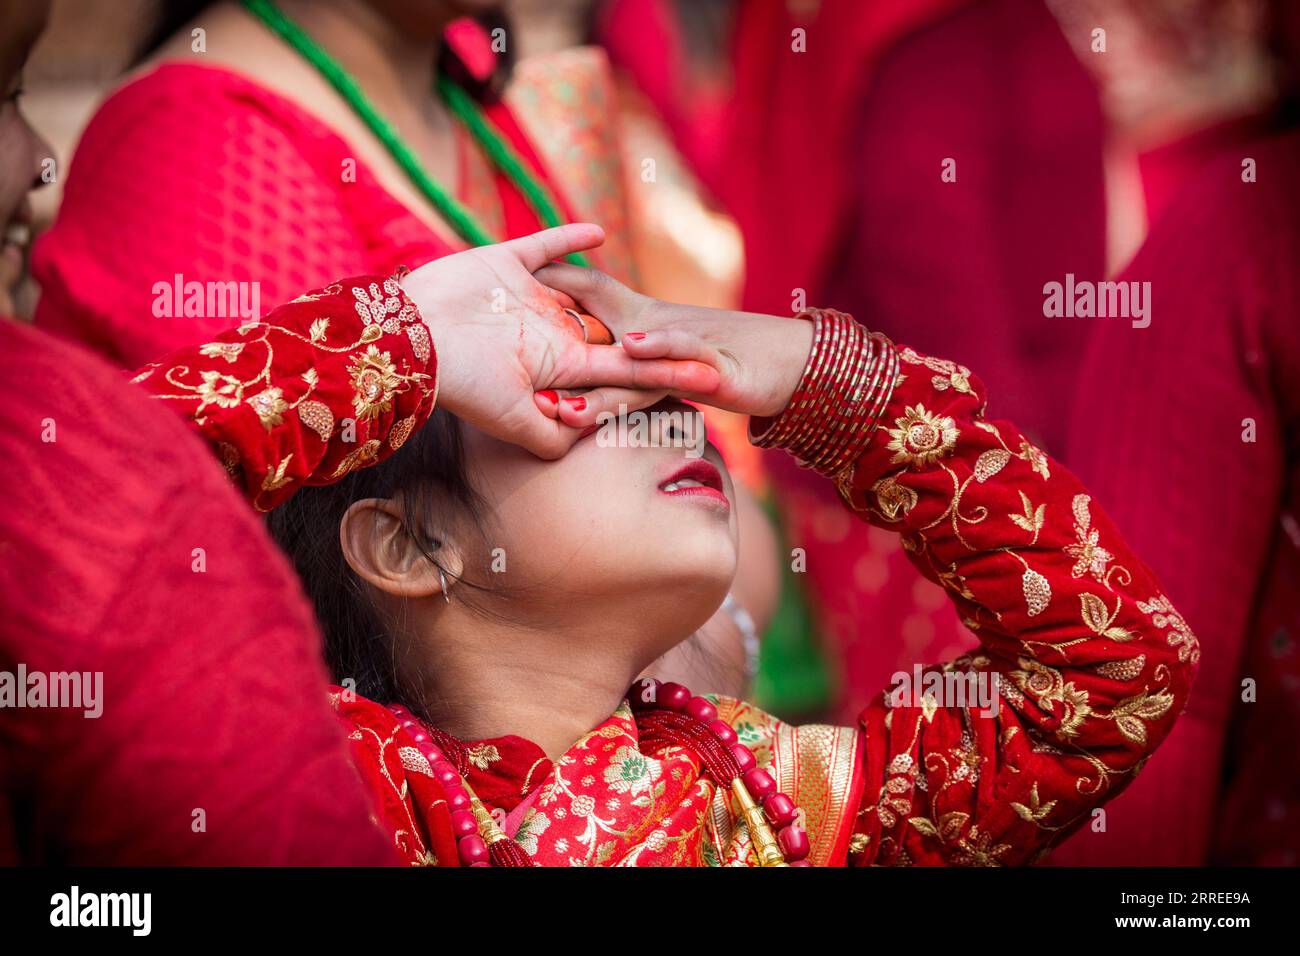 220223 -- LALITPUR, 23 febbraio 2022 -- Una ragazza adora il Sole durante una cerimonia di pubertà nota come Gufa a Lalitpur, Nepal, 23 febbraio 2022. Foto di /Xinhua NEPAL-LALITPUR-GUFA-CERIMONIA DELLA PUBERTÀ HarixMaharjan PUBLICATIONxNOTxINxCHN Foto Stock